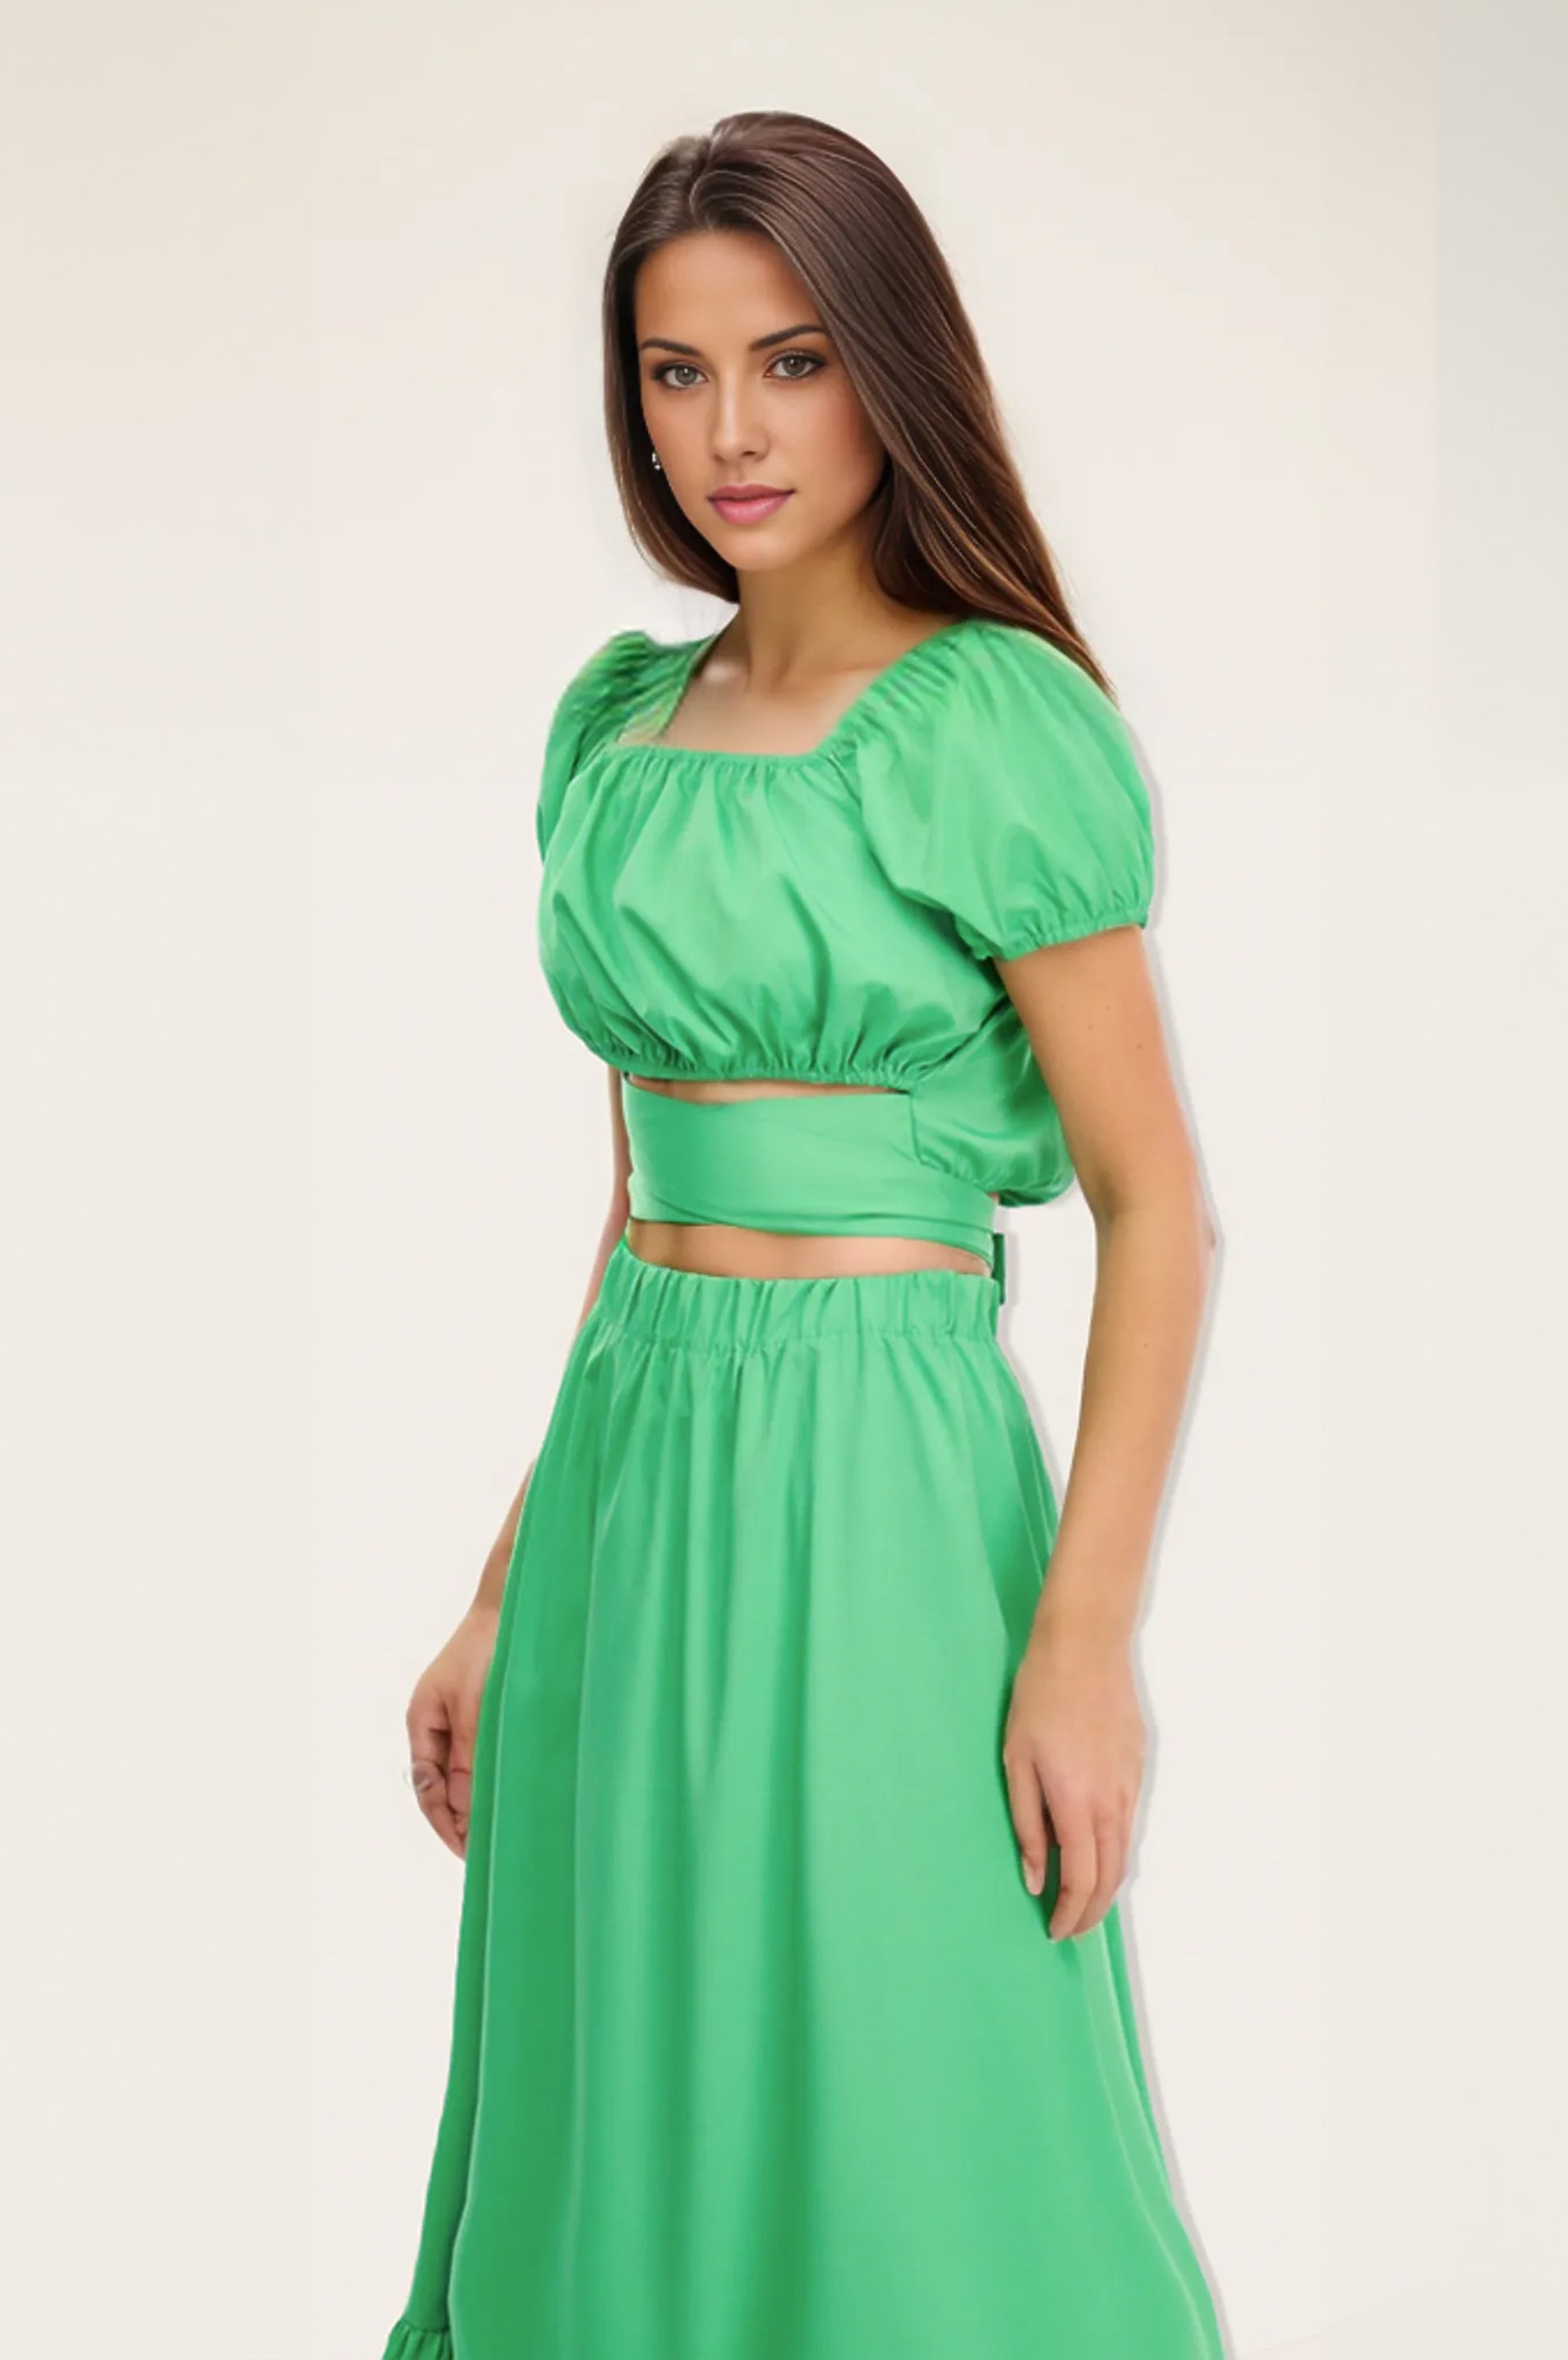 Helle 2-Piece Maxi Skirt Set - Green